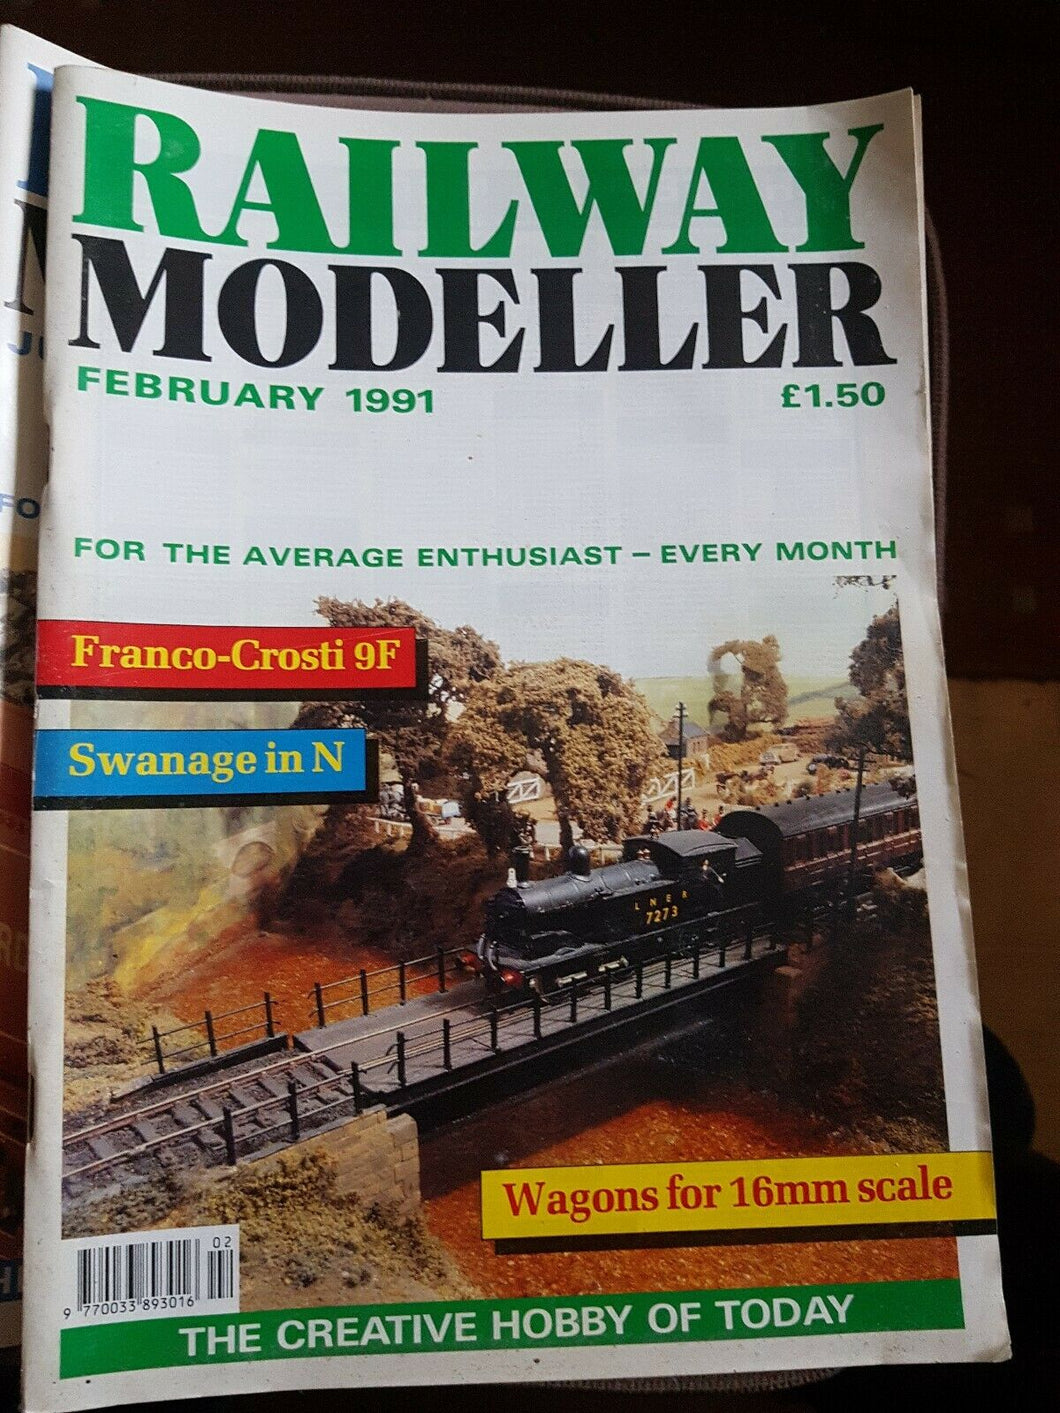 Railway modeller magazine February 1991